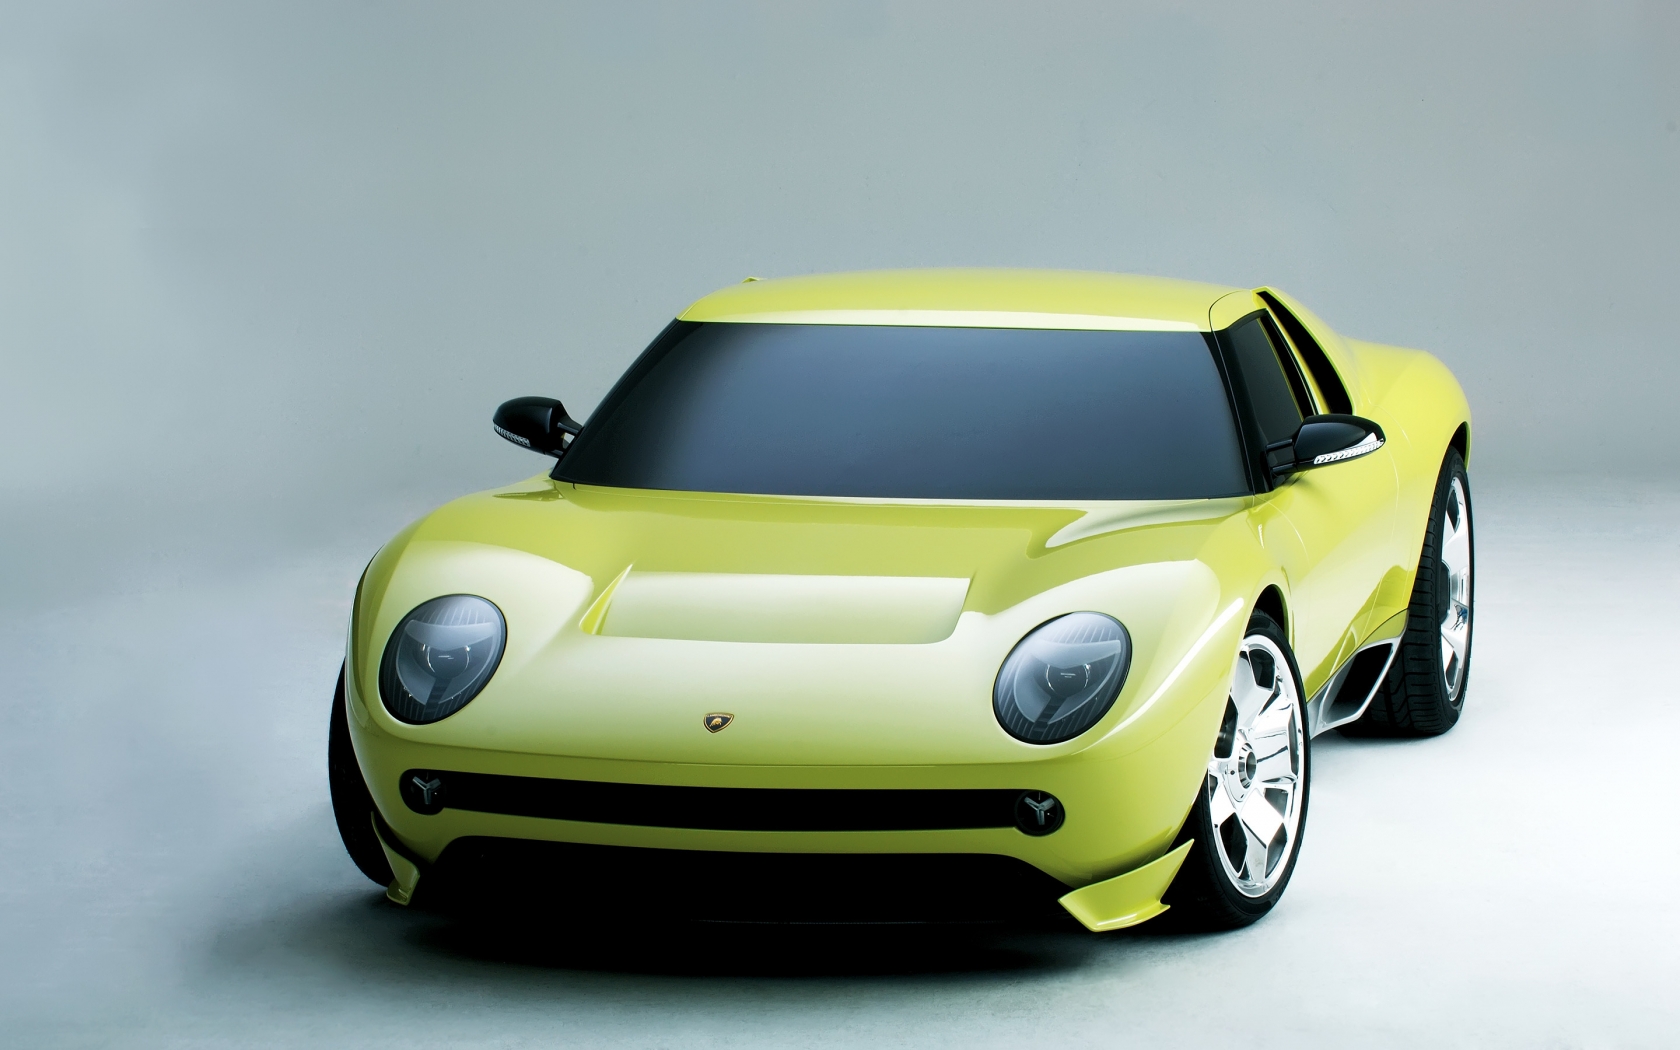 Lamborghini Miura Concept for 1680 x 1050 widescreen resolution